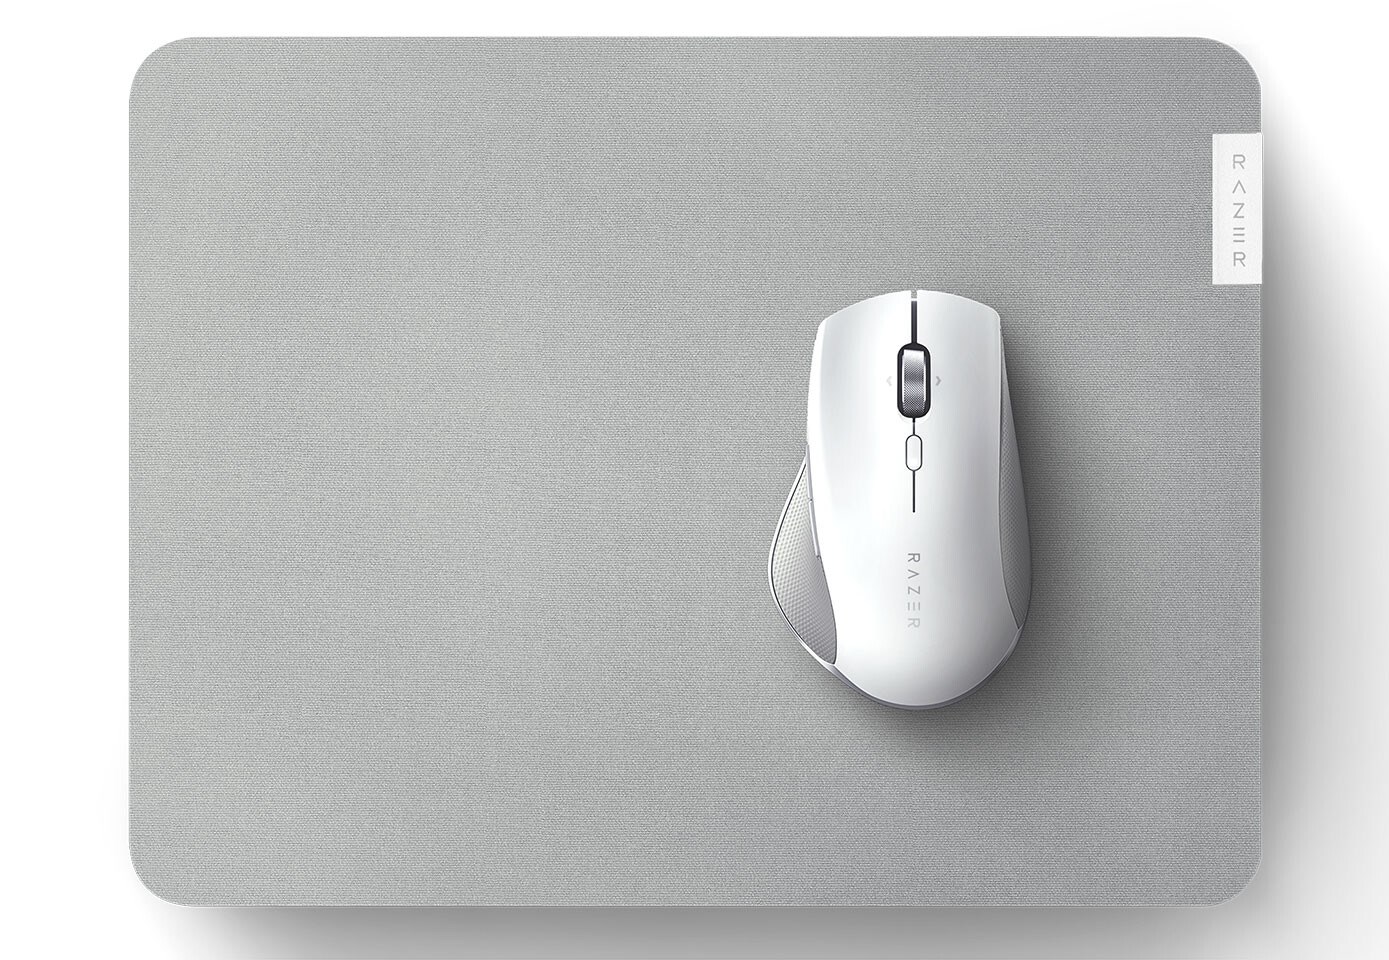 Razer verimlilik odaklı fare-klavye seti duyurdu